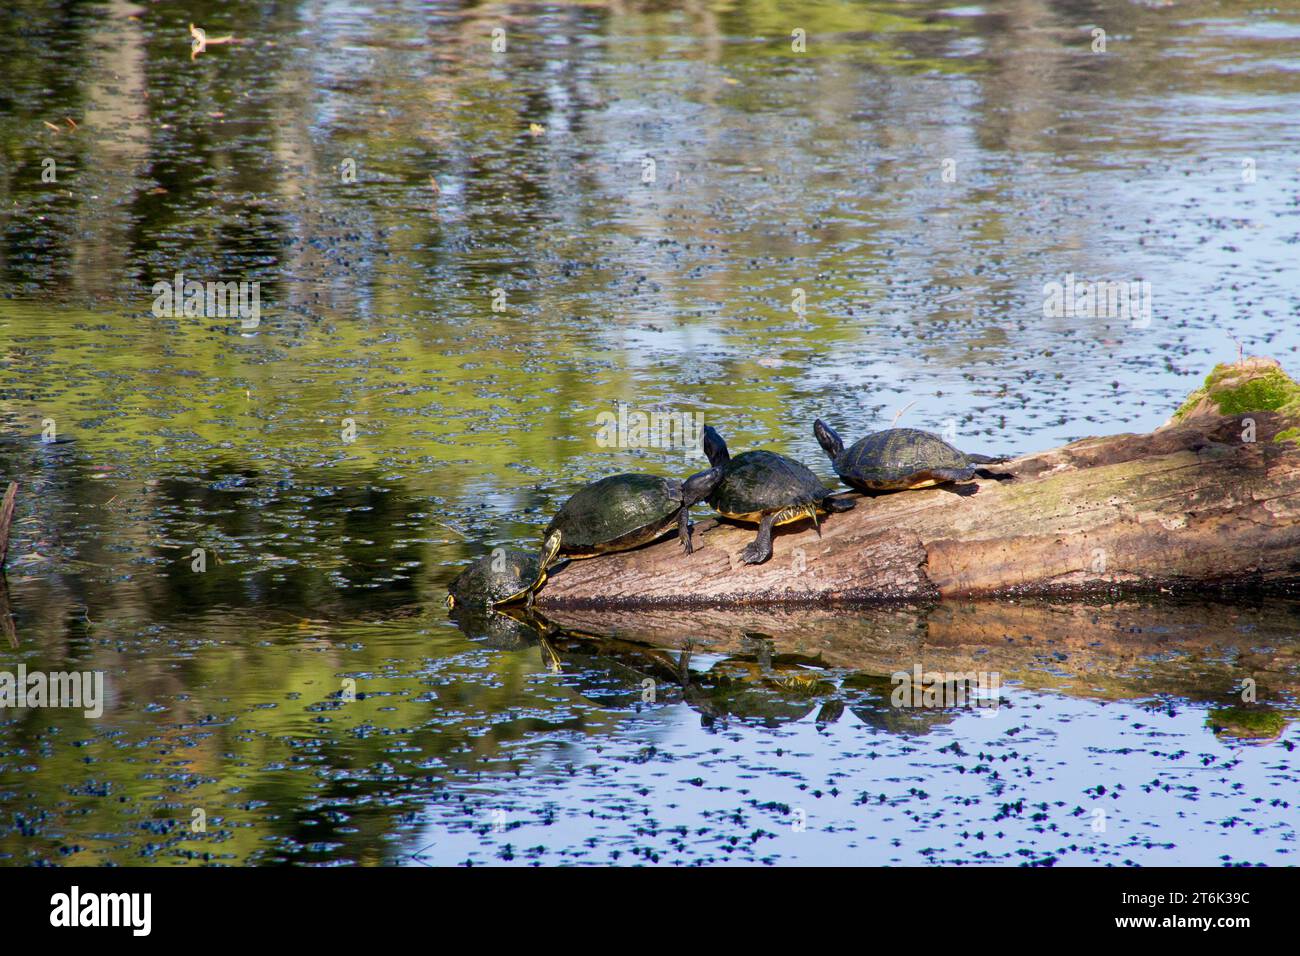 Quatre tortues, trois reposant sur un éperon rocheux dans un étang infesté de plantes et la quatrième grimpant notre de l'eau. Banque D'Images